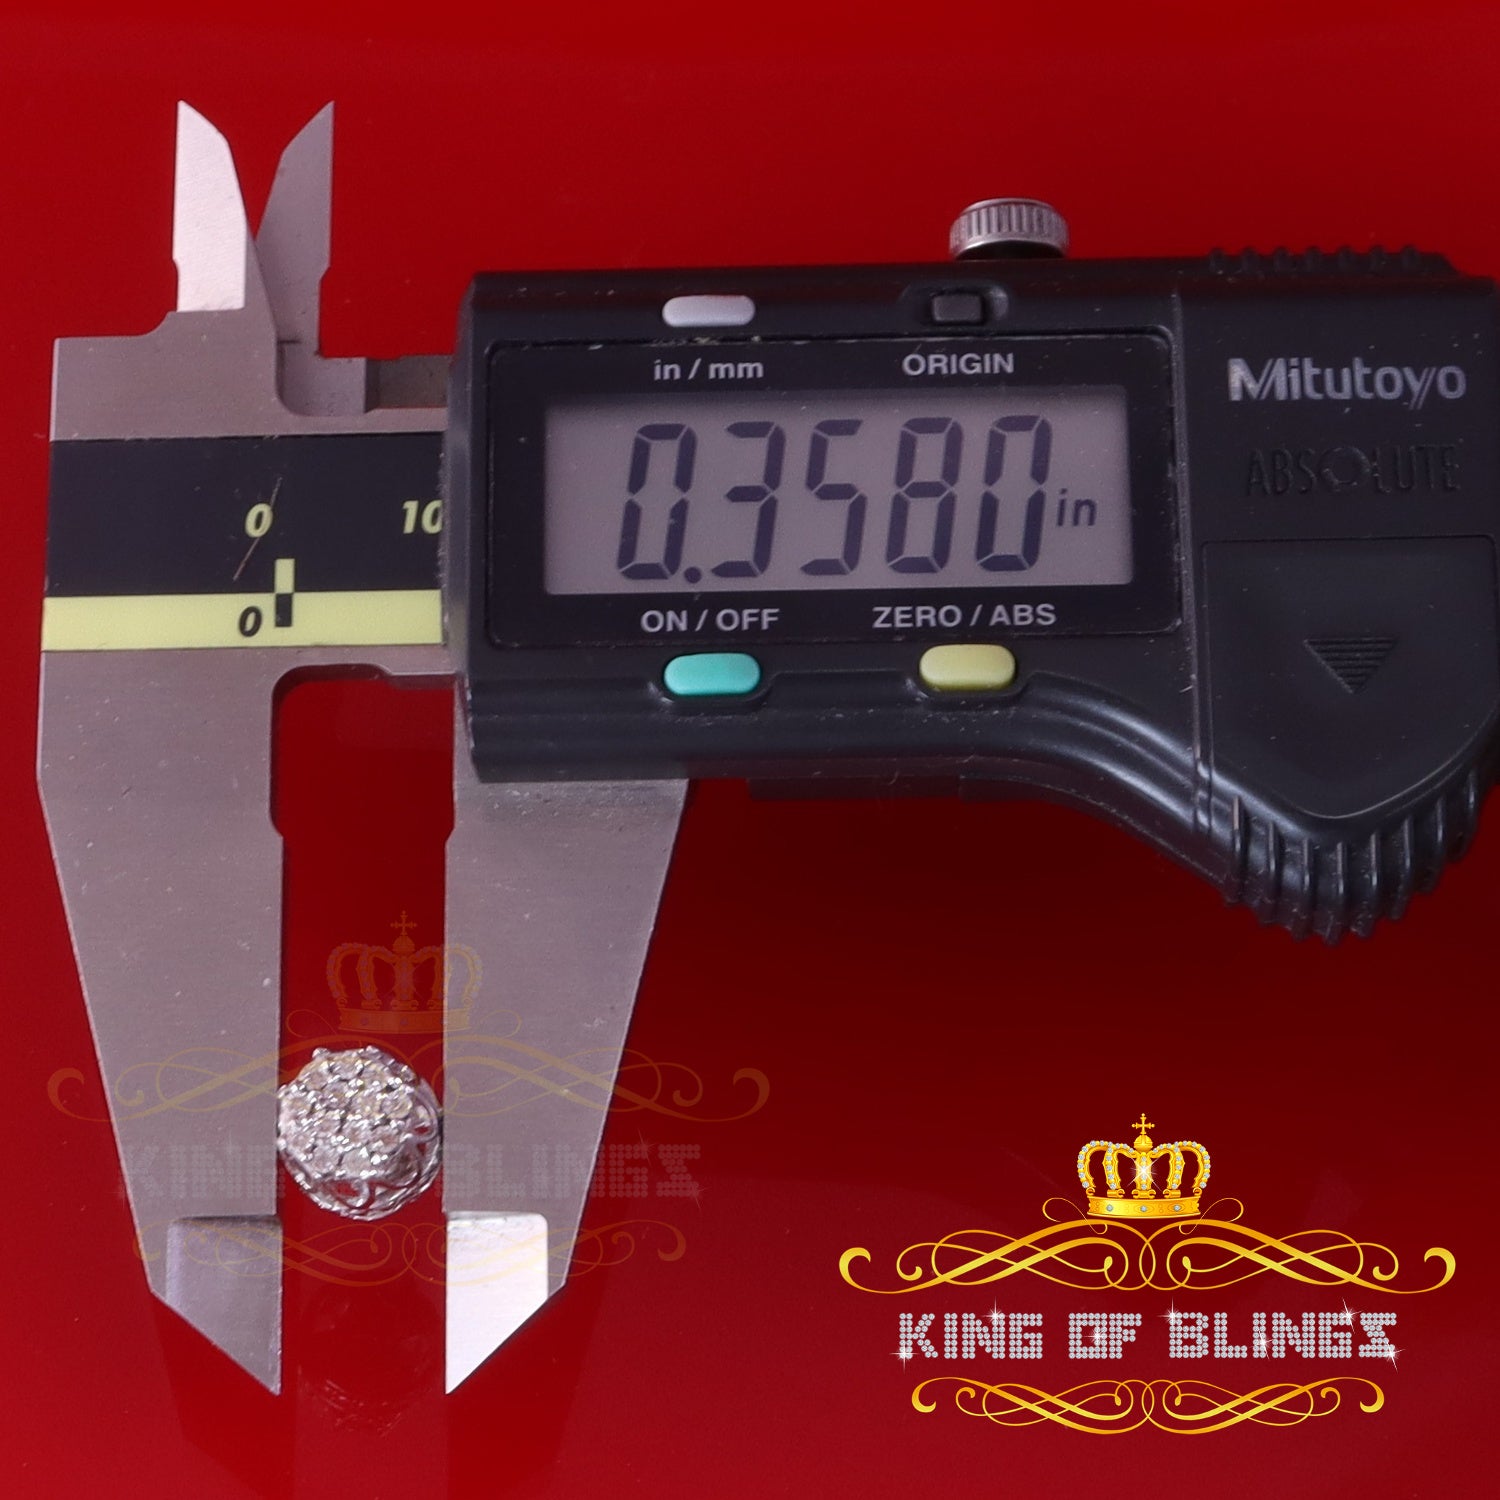 King Of Bling's 0.07ct Diamond 925 Sterling White Silver for Men's & Womens Stud Round Earrings KING OF BLINGS